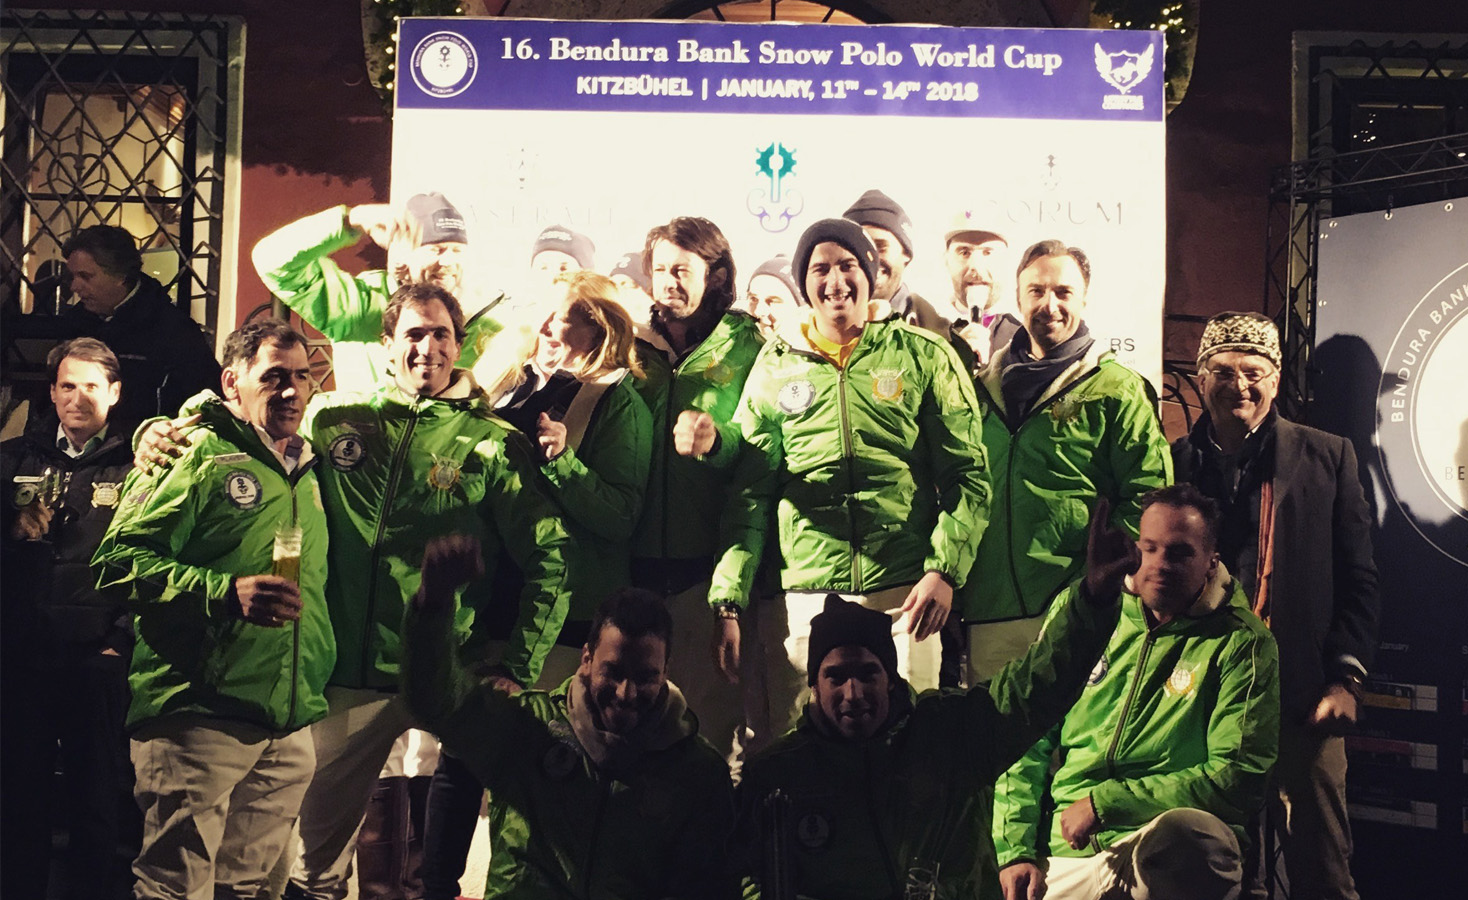 snow polo world cup, polo in snow, Bendura bank team